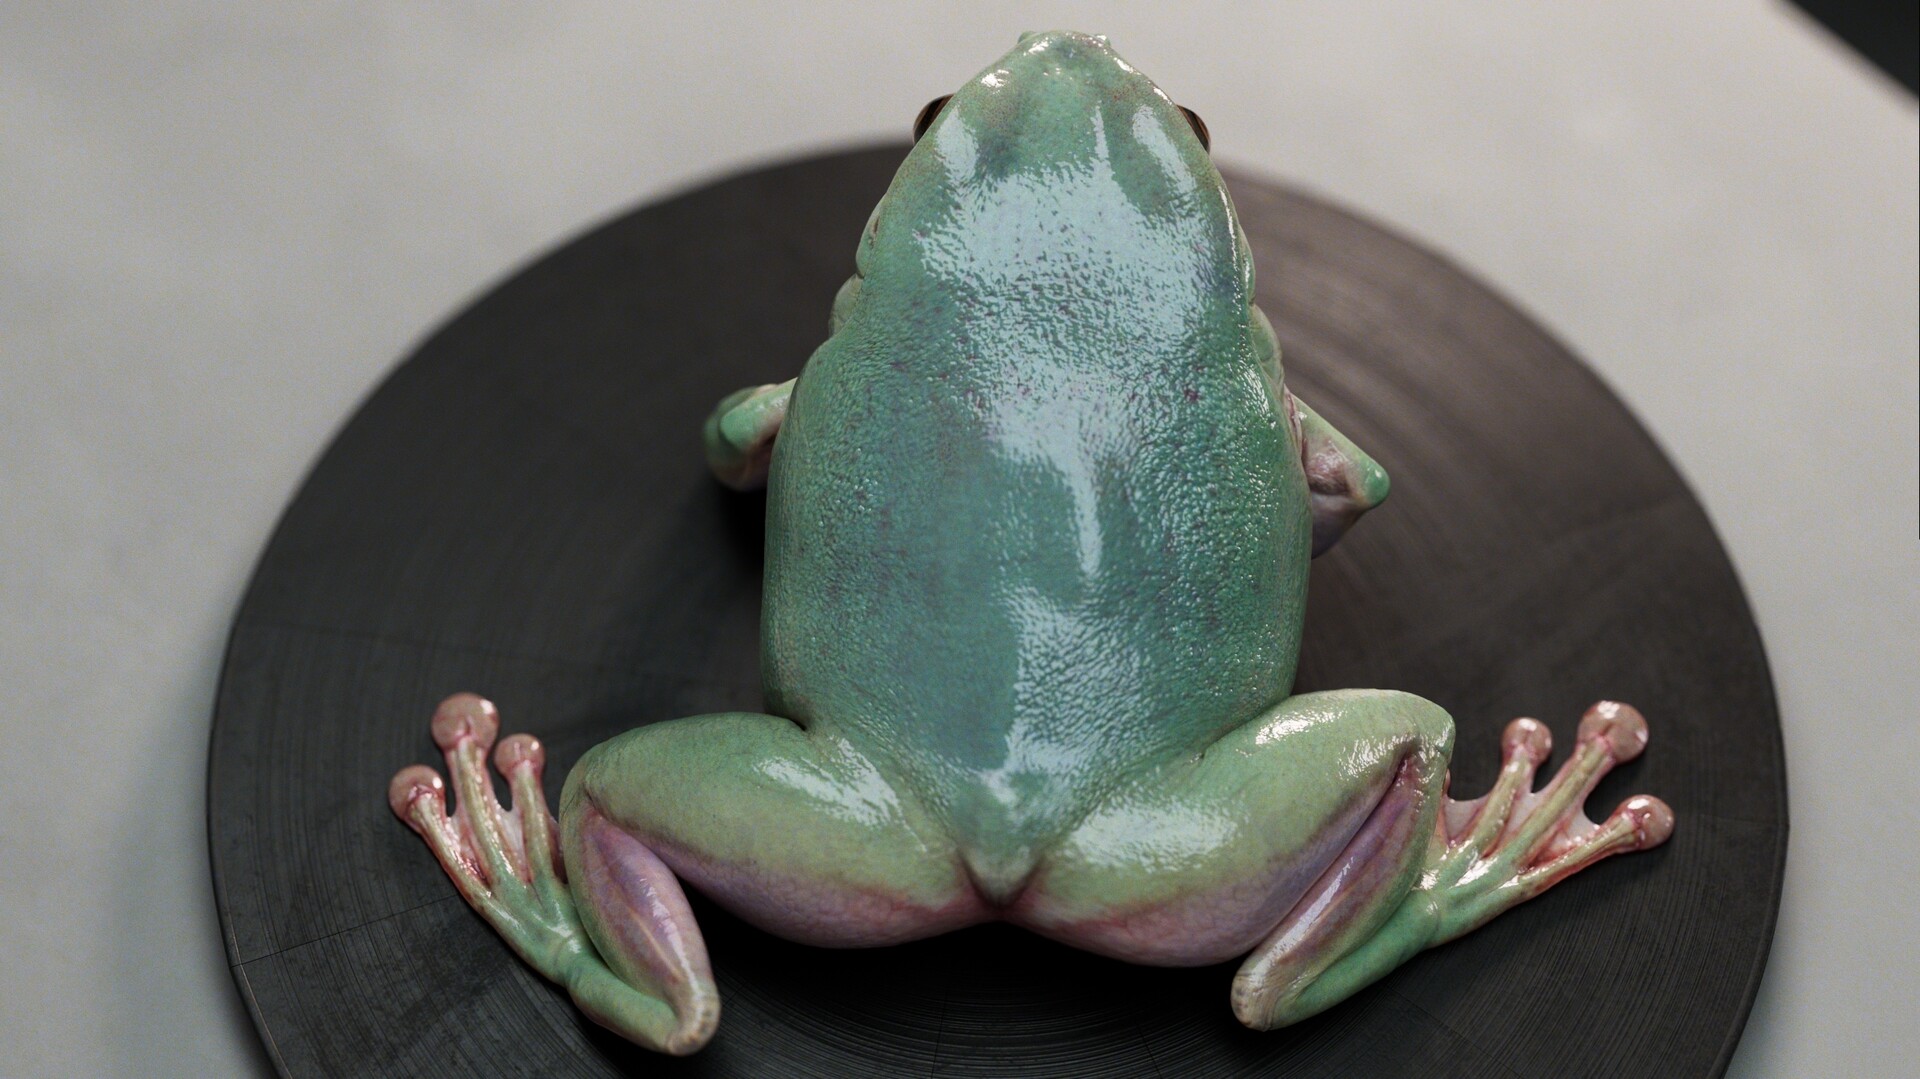 Lifelike 3D Frog Model & Animation by Gabriel Lebel Bernier